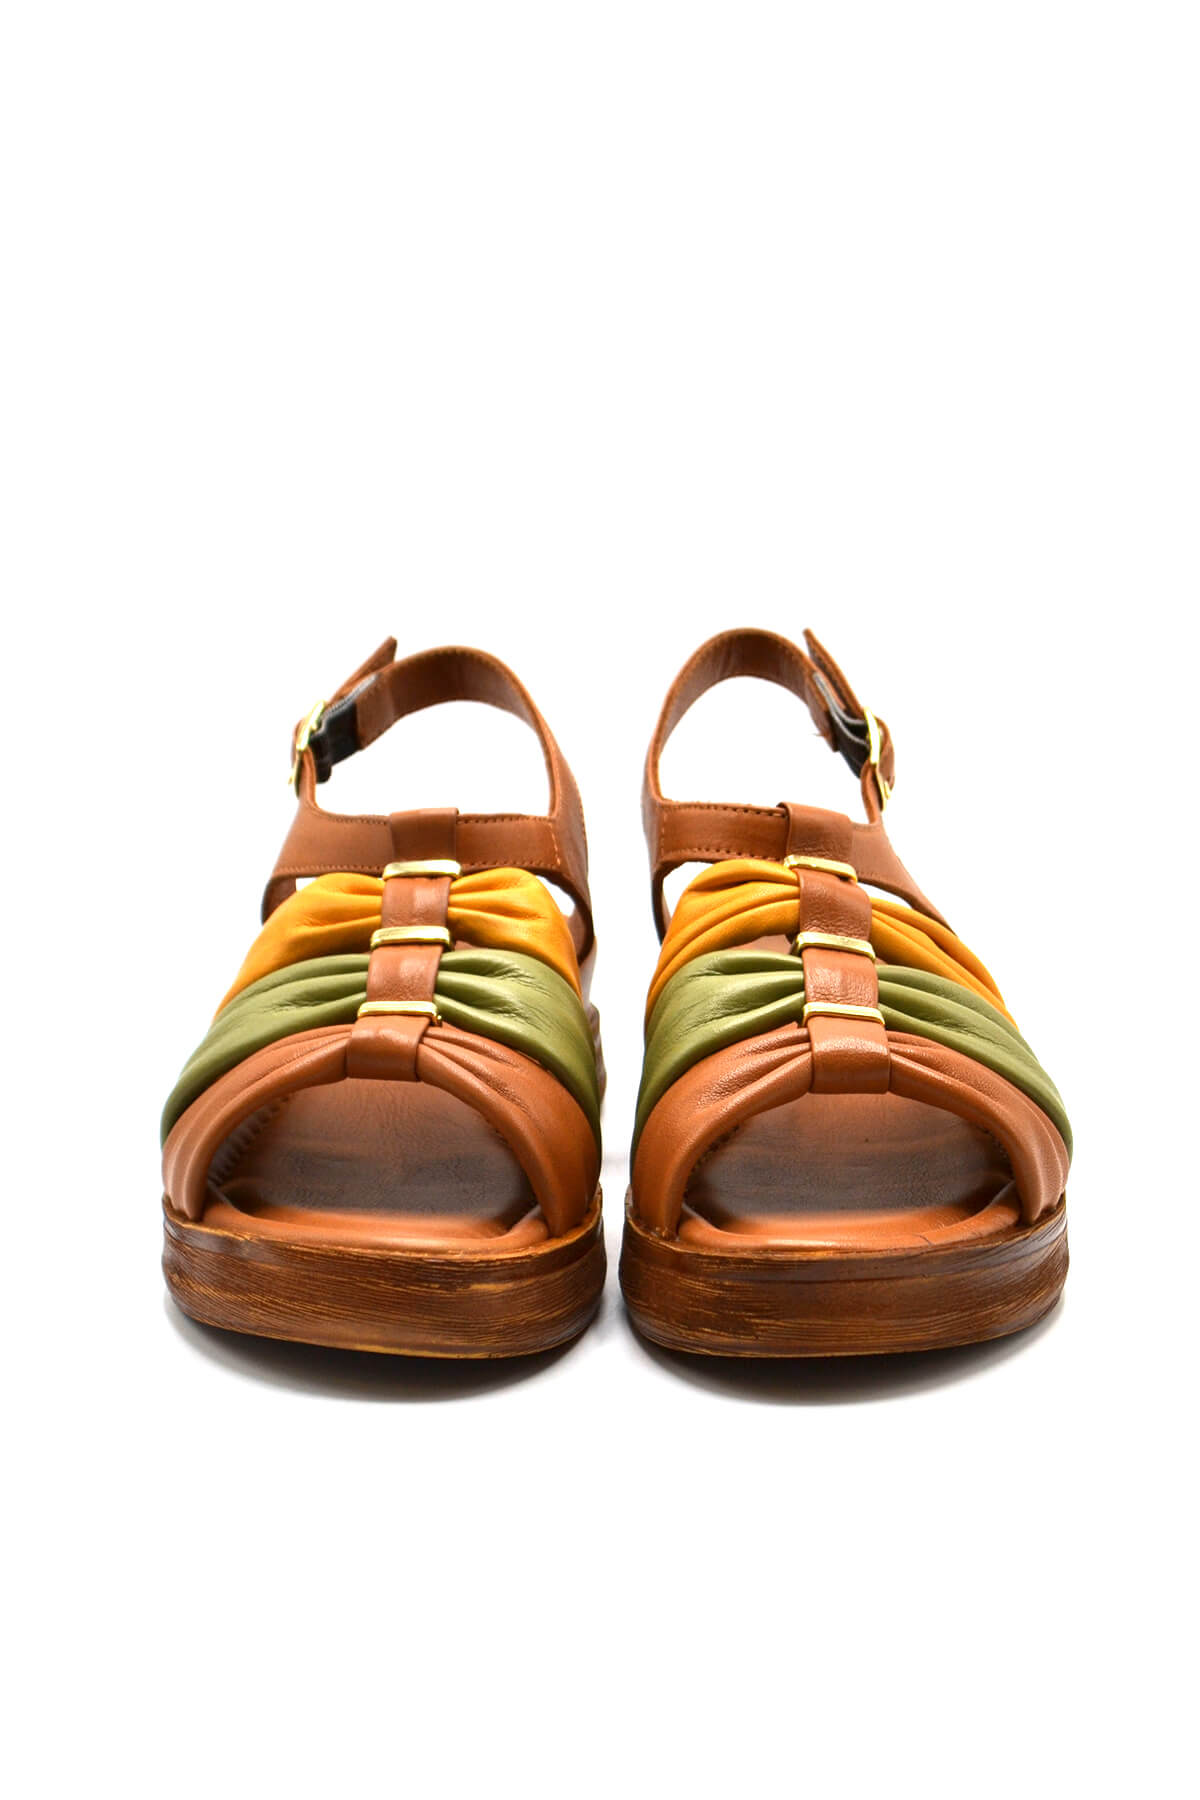 Kadın Comfort Deri Sandalet Taba 2216412Y - Thumbnail